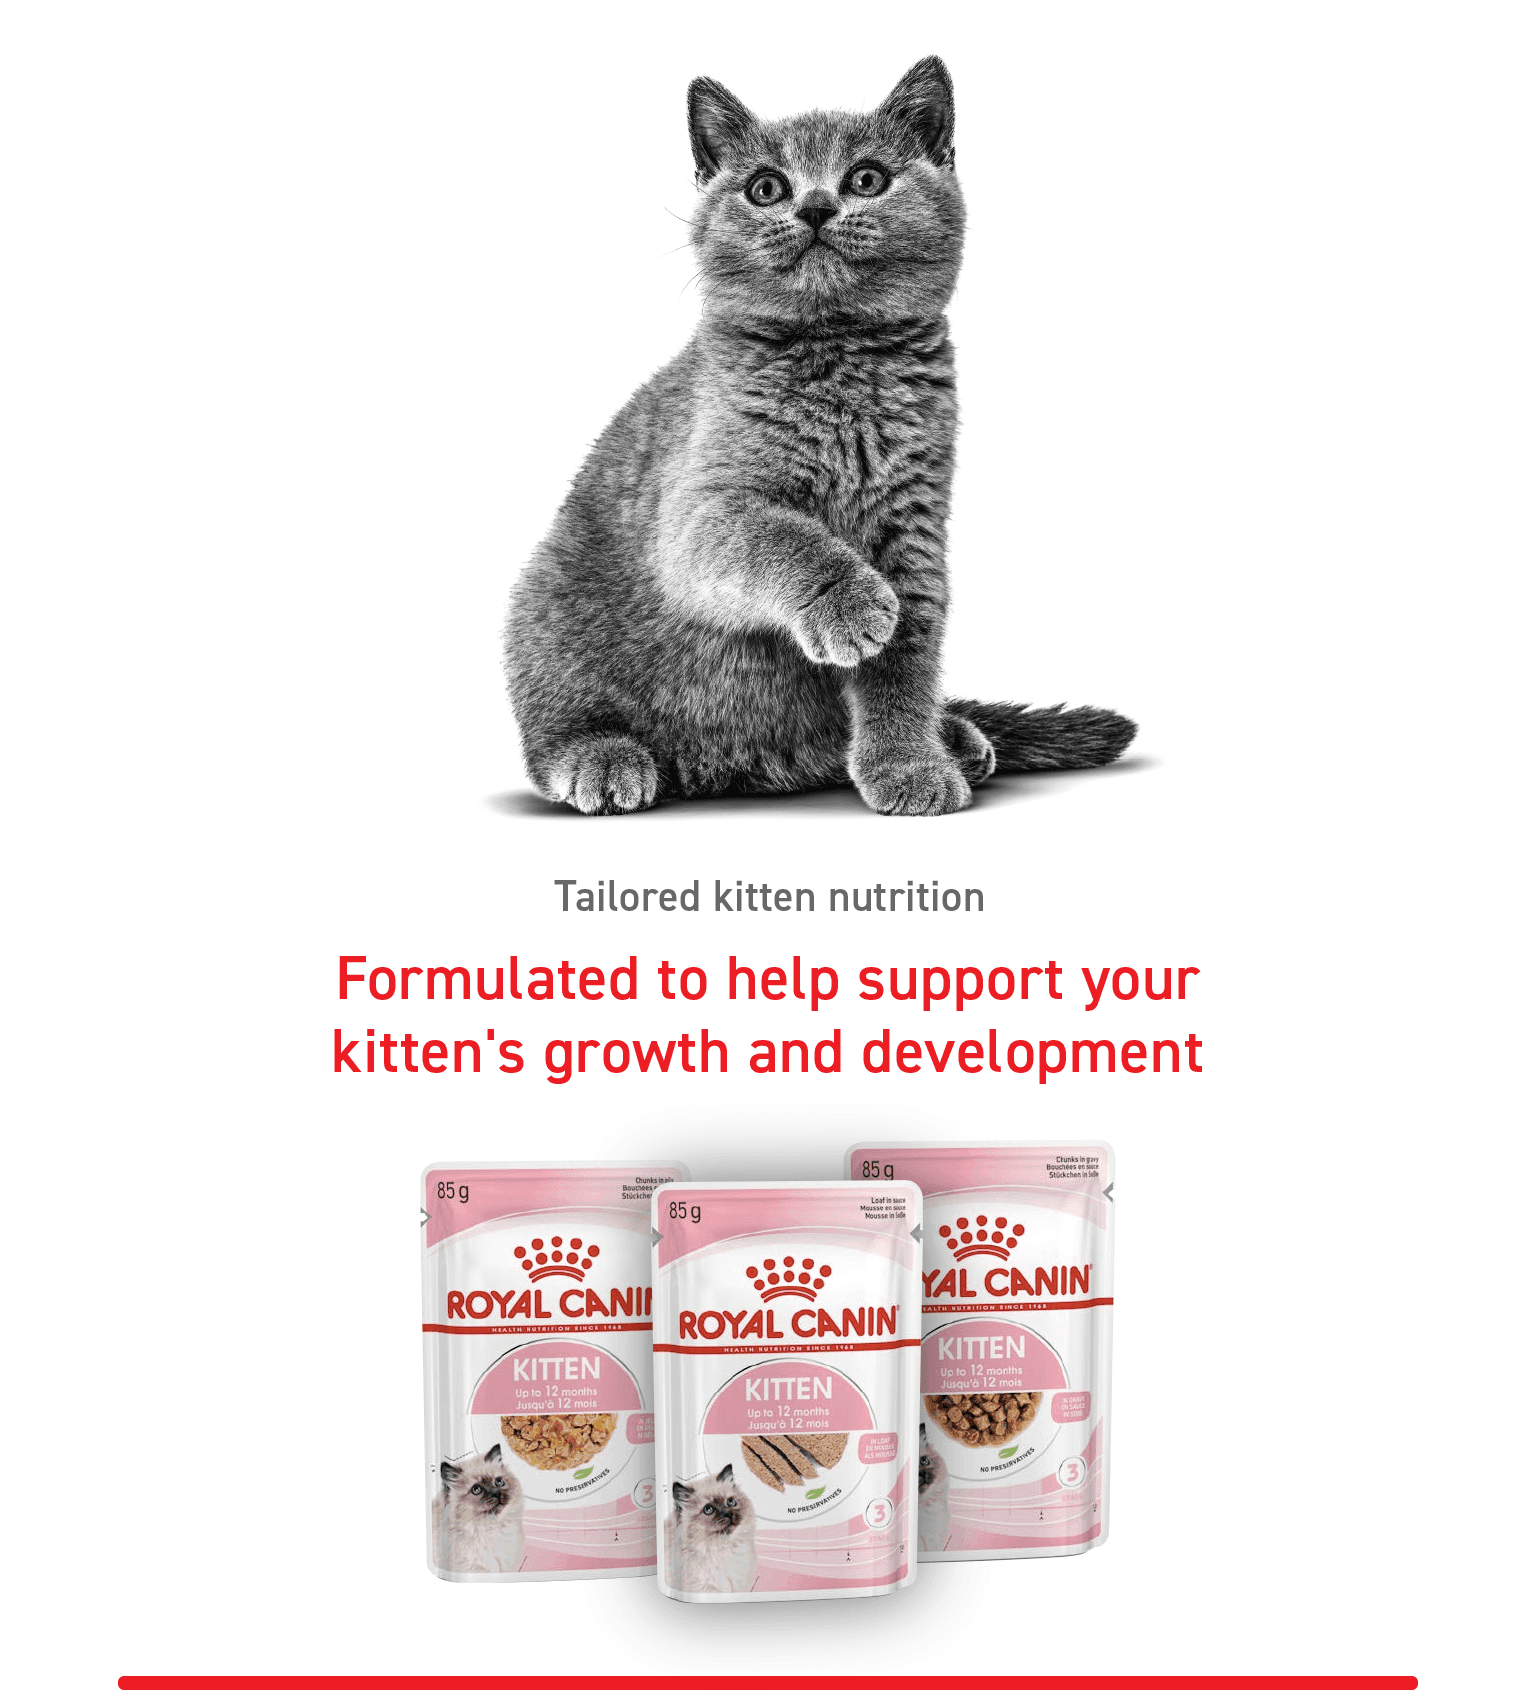 Tailored kitten nutrition